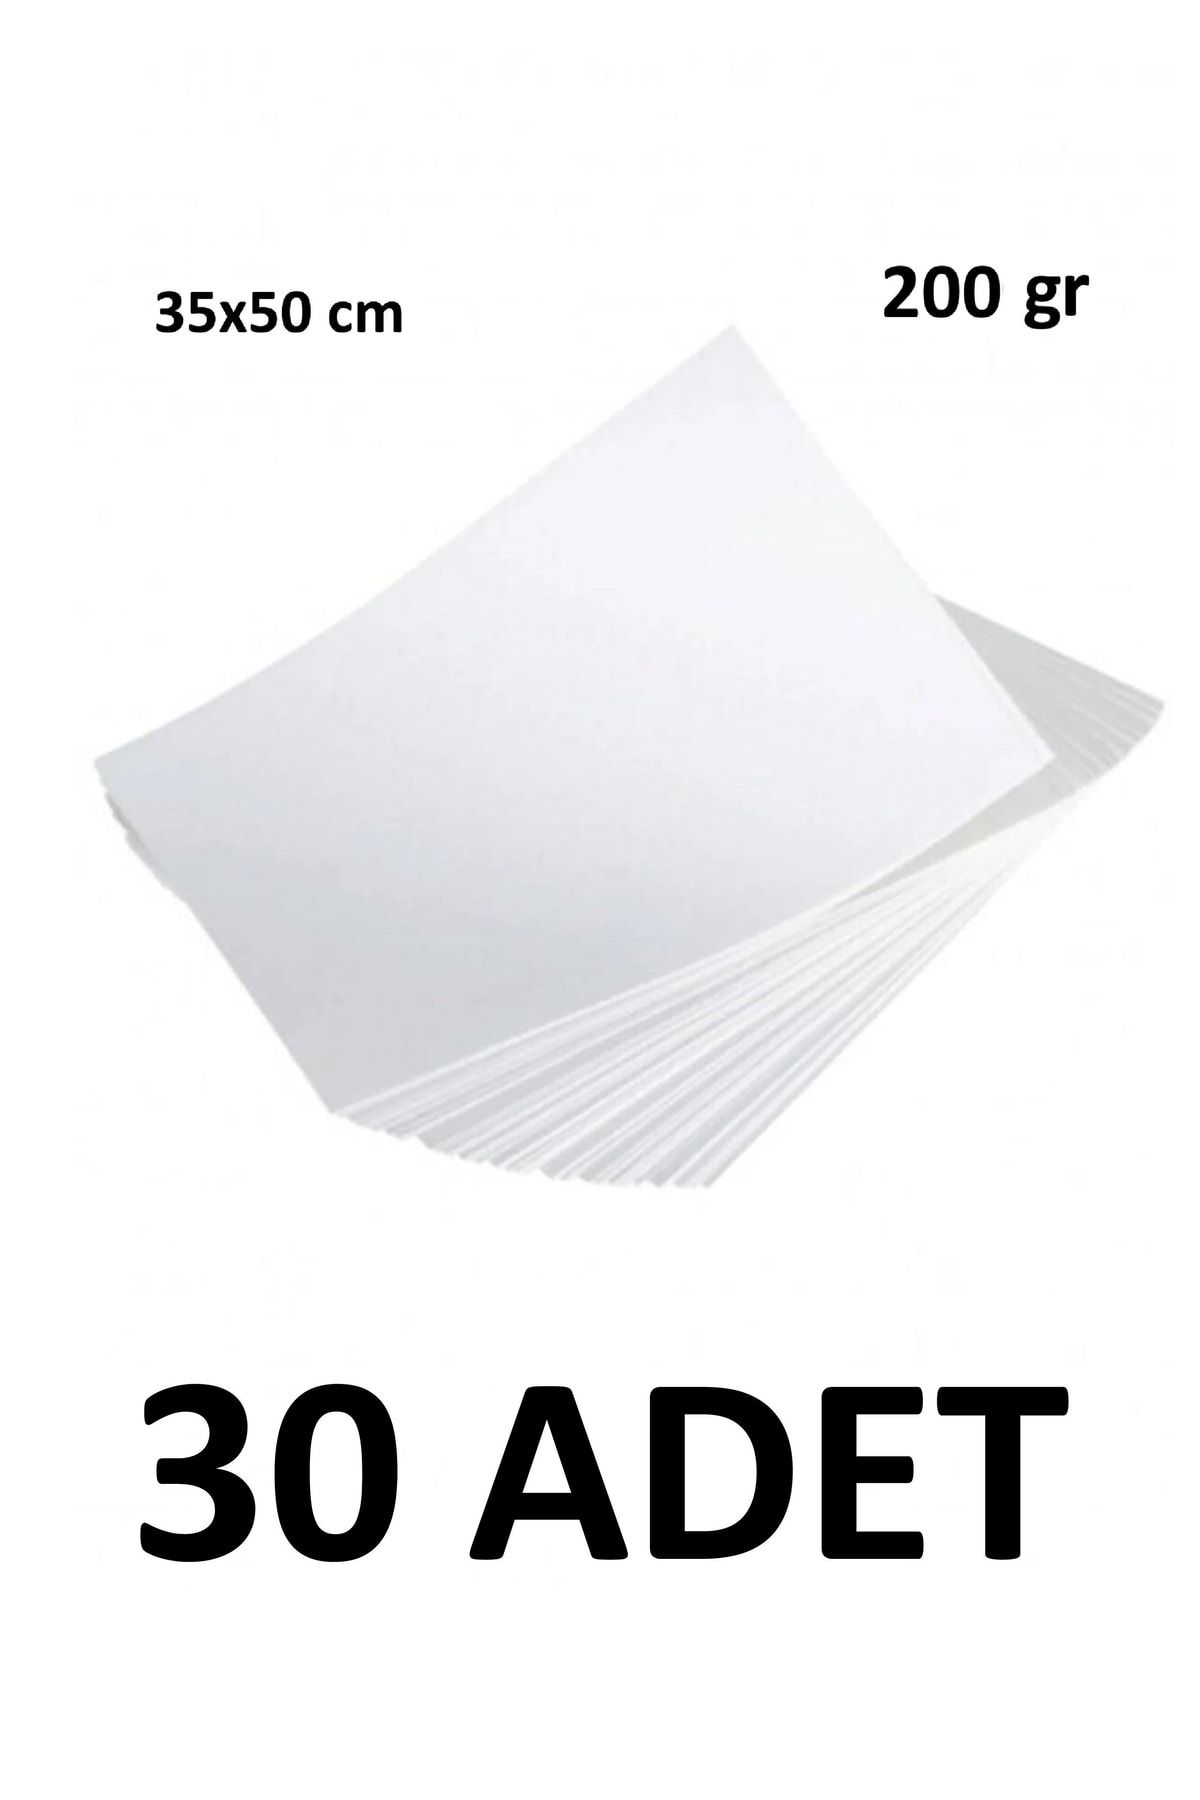 Keskin Color 30 Adet Karatis Art Beyaz Resim Kağıdı 35 X 50 Cm 200 Gr